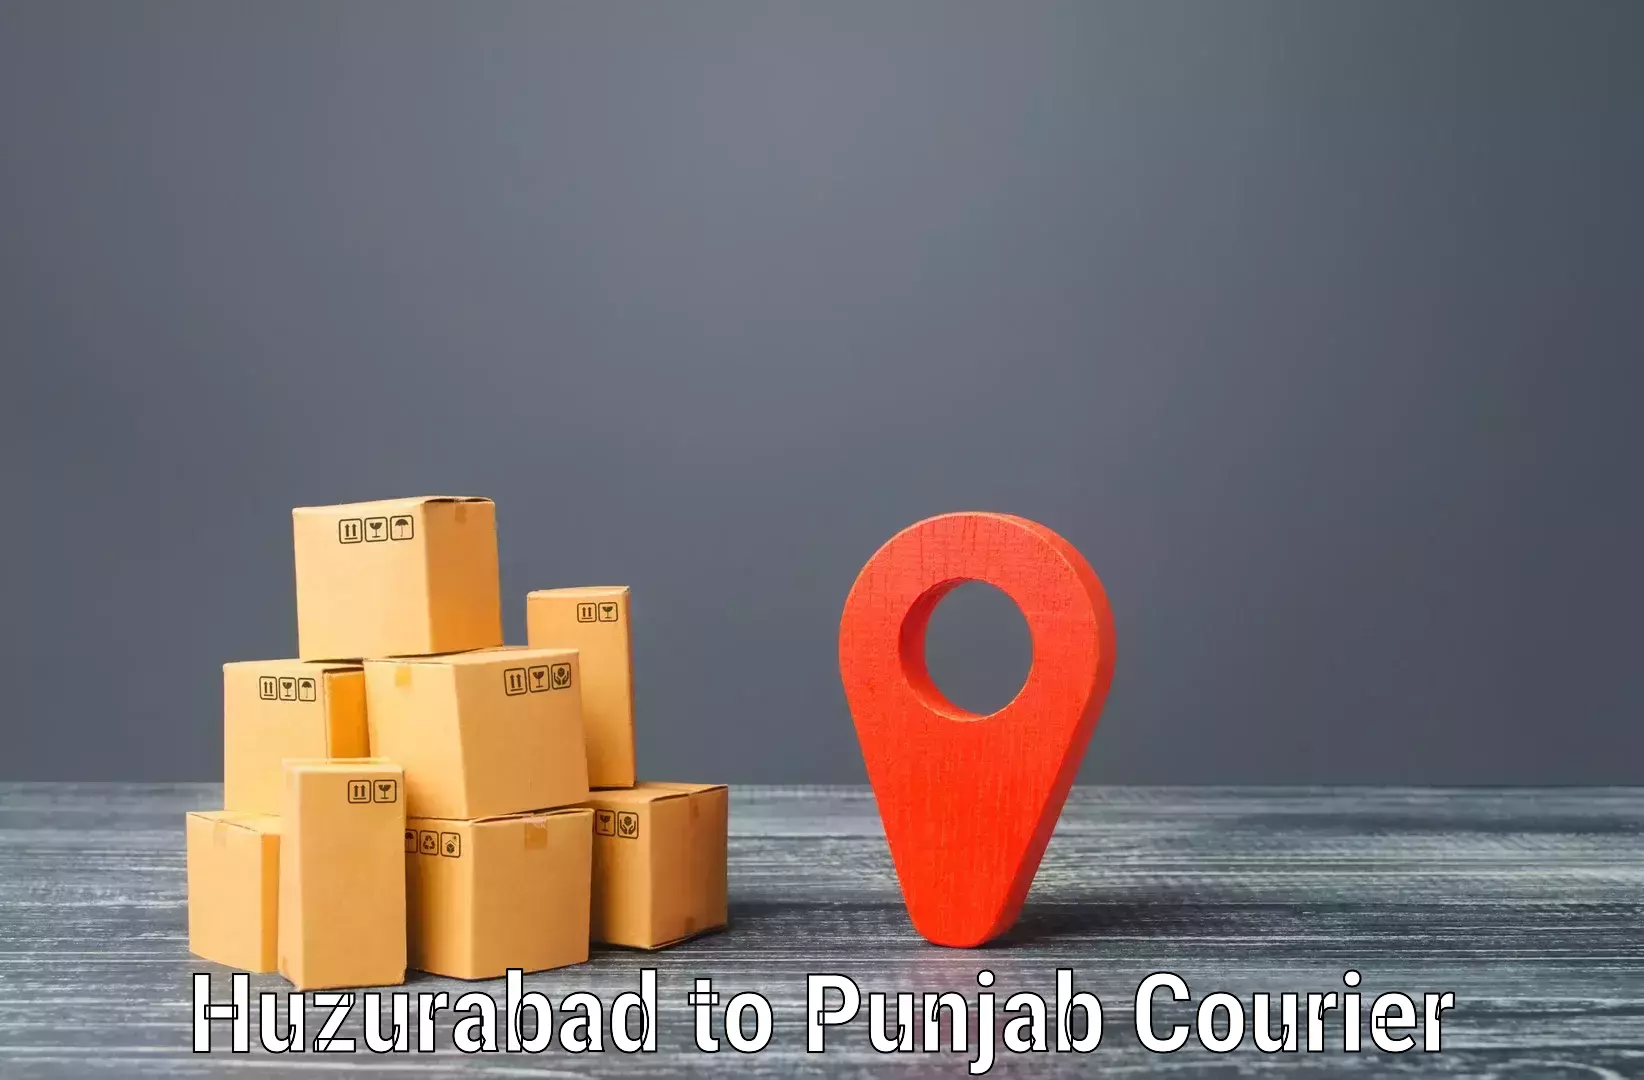 Flexible delivery scheduling Huzurabad to Jhunir